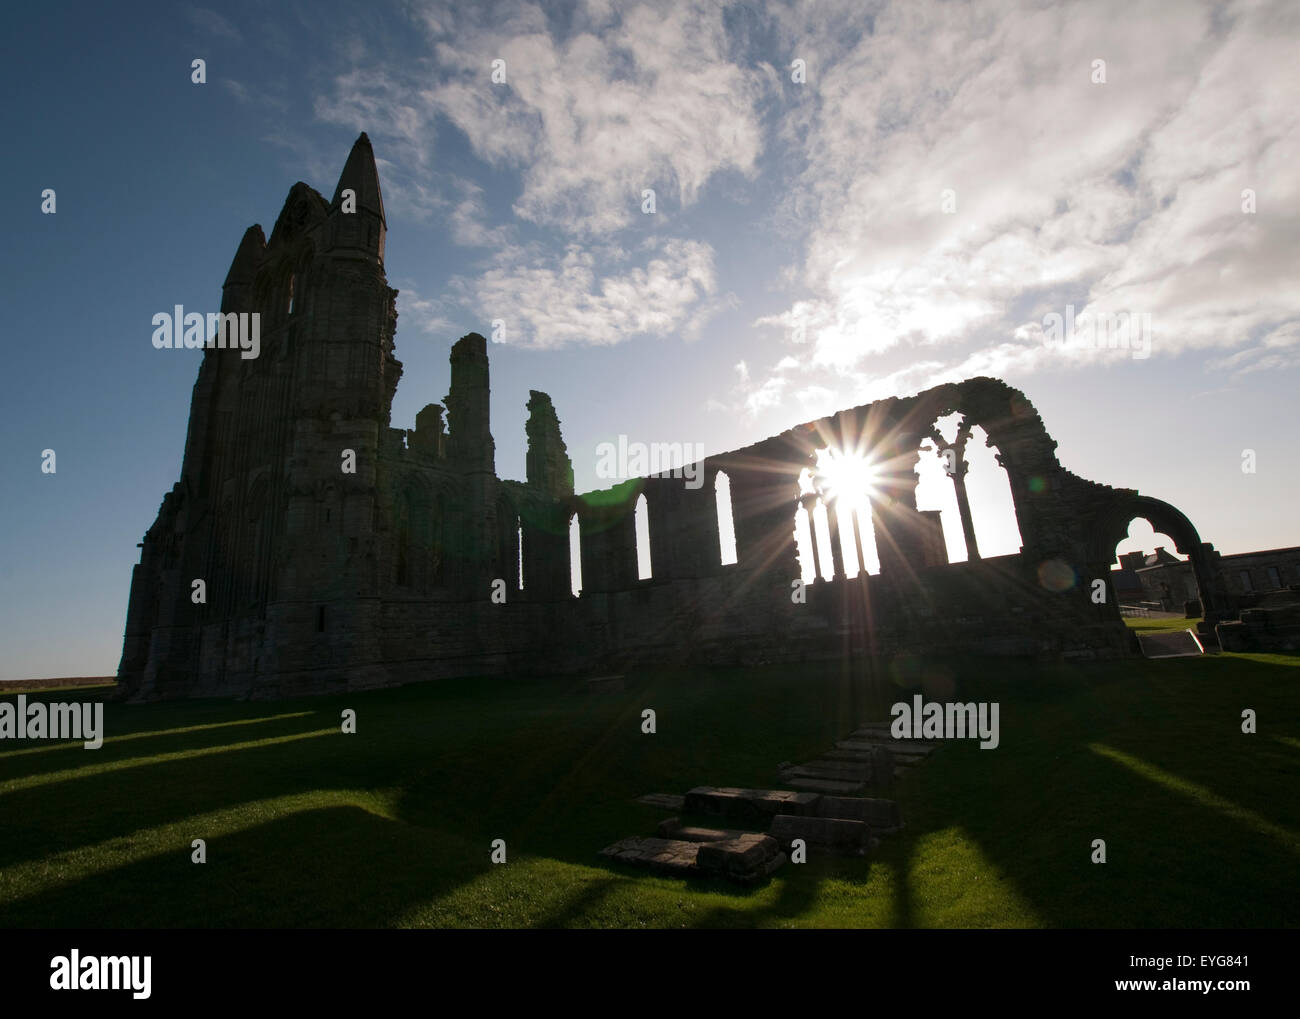 Au début de l'hiver matin la lumière et les ombres dans les ruines de l'abbaye de Whitby, North Yorkshire Angleterre UK Banque D'Images